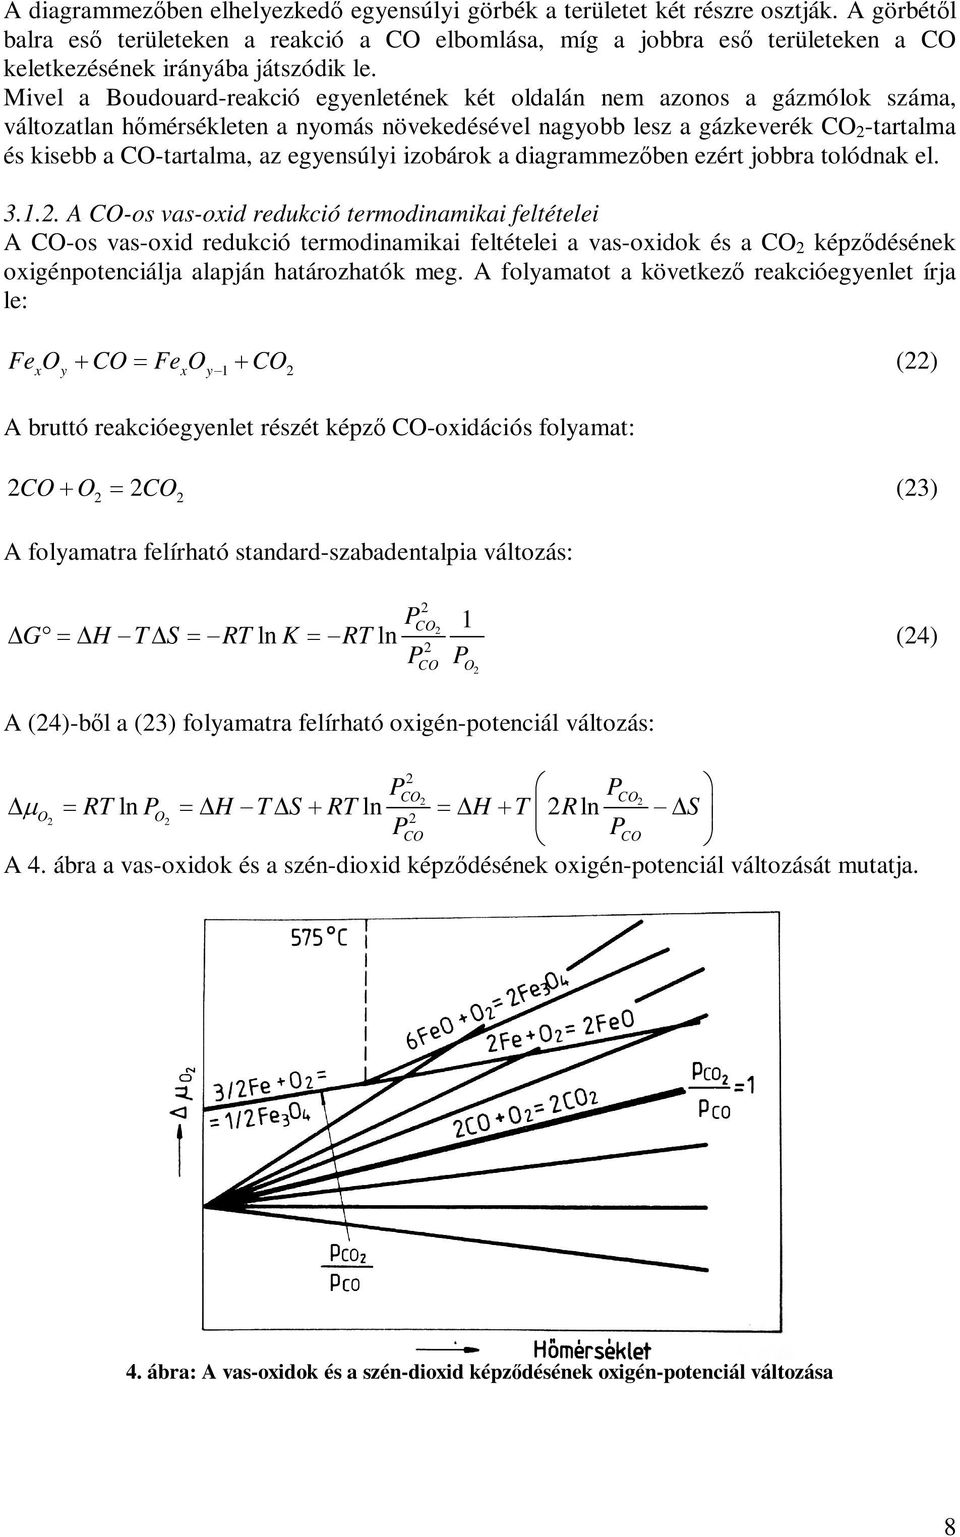 A vas-oxidok redukciós folyamatainak termodinamikája - PDF Free Download